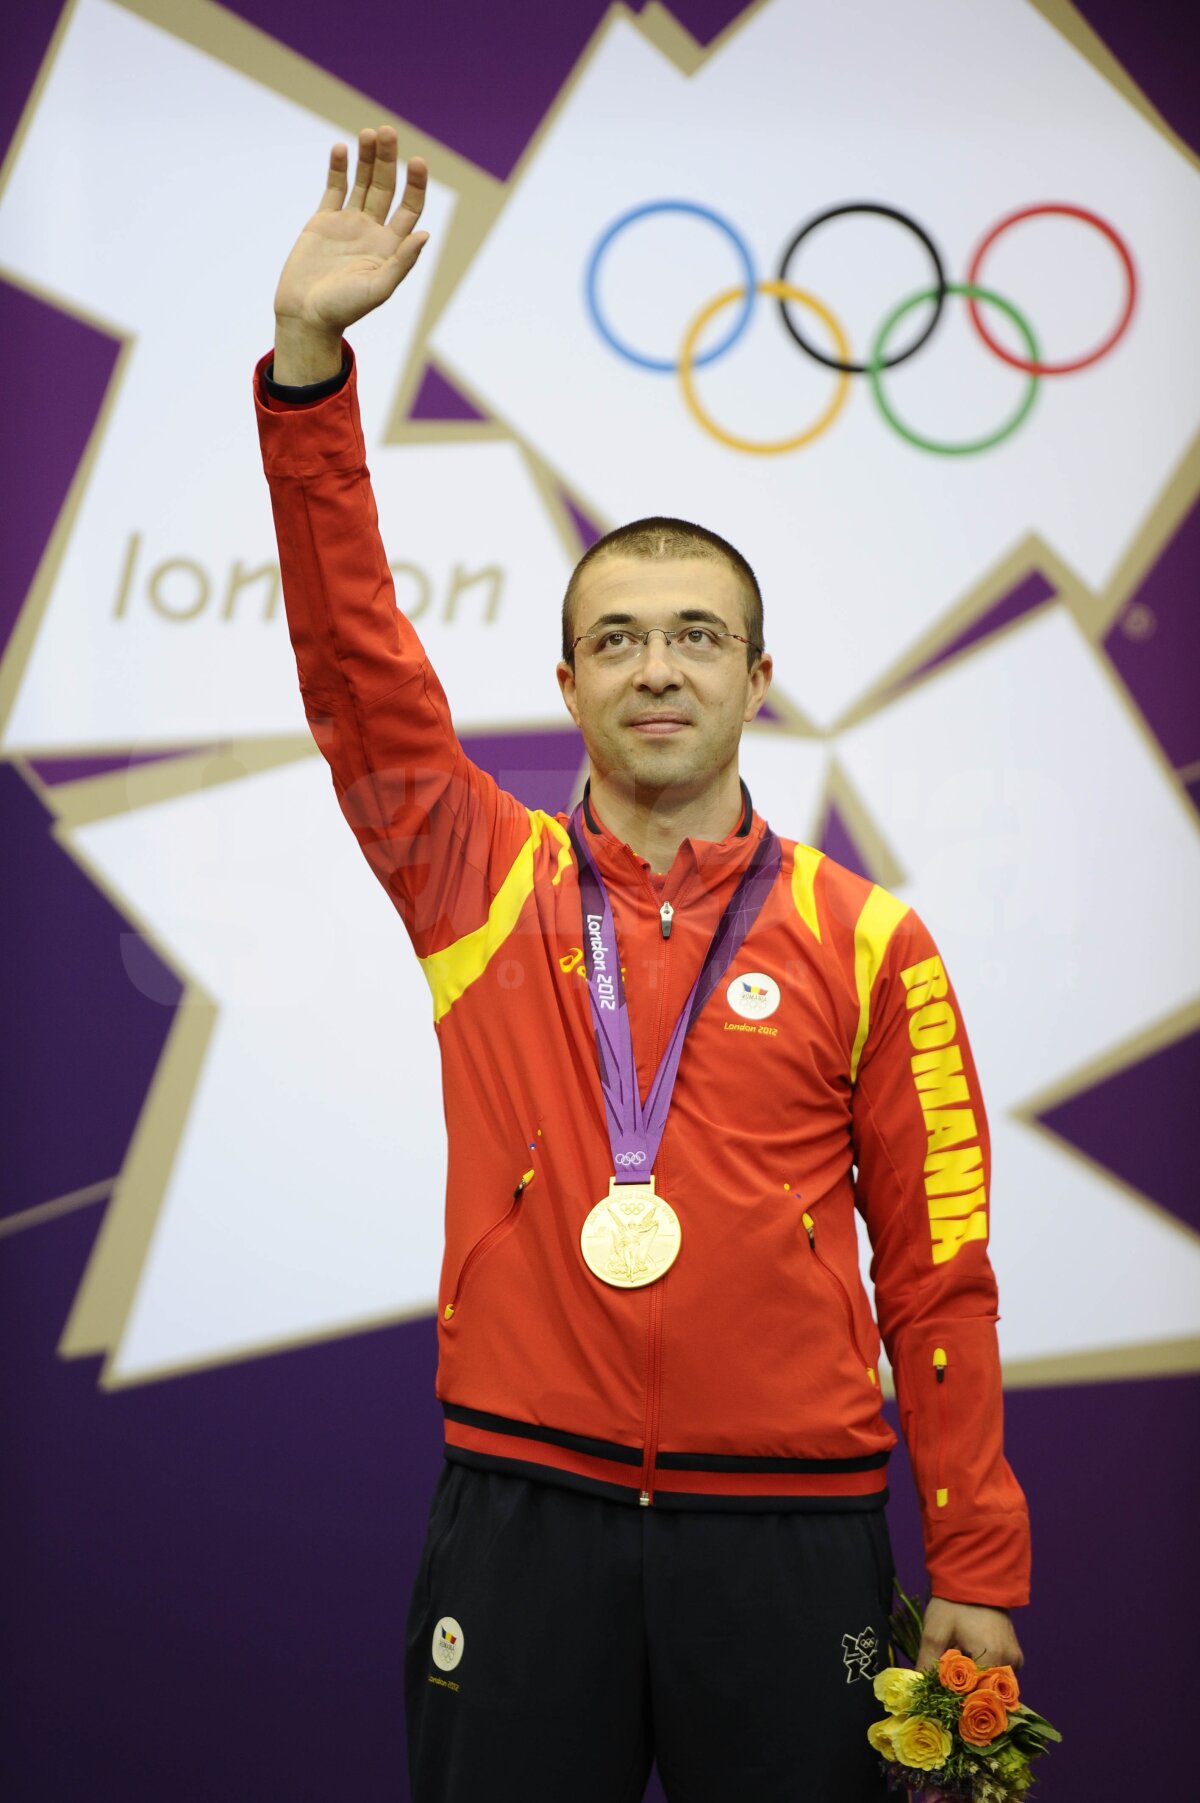 Avem primul aur, Alin Moldoveanu e CAMPION OLIMPIC la tir! Mesajul lui: "Mulţumesc, România, pentru susţinere!"